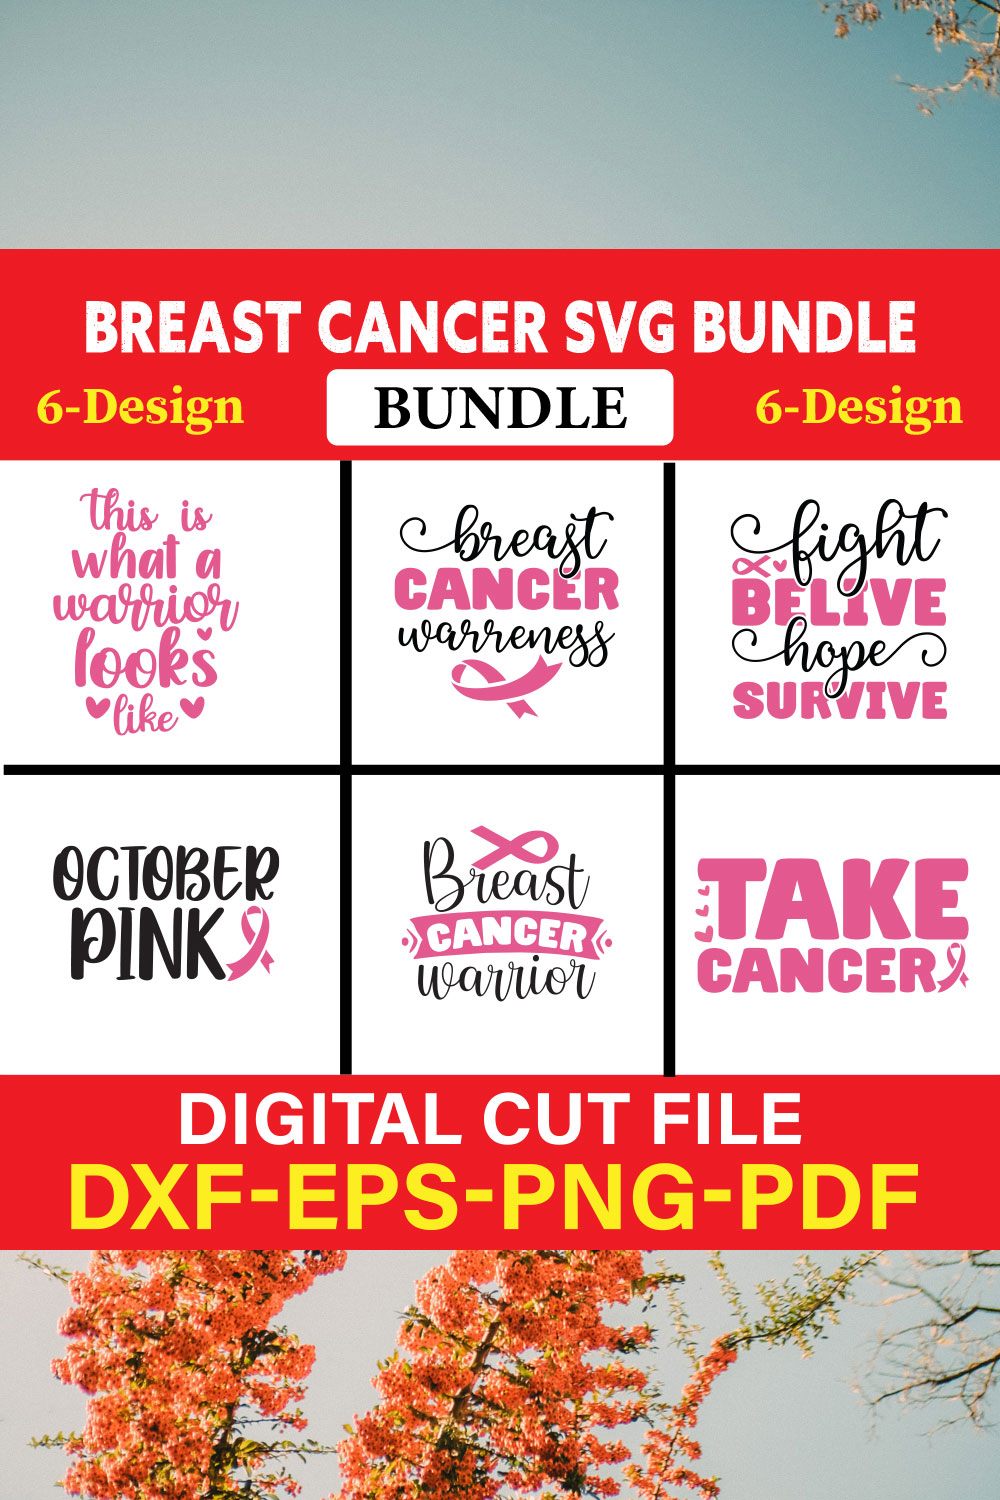 Breast Cancer SVG Bundle, Cancer SVG, Cancer Awareness, Vol-06 pinterest preview image.